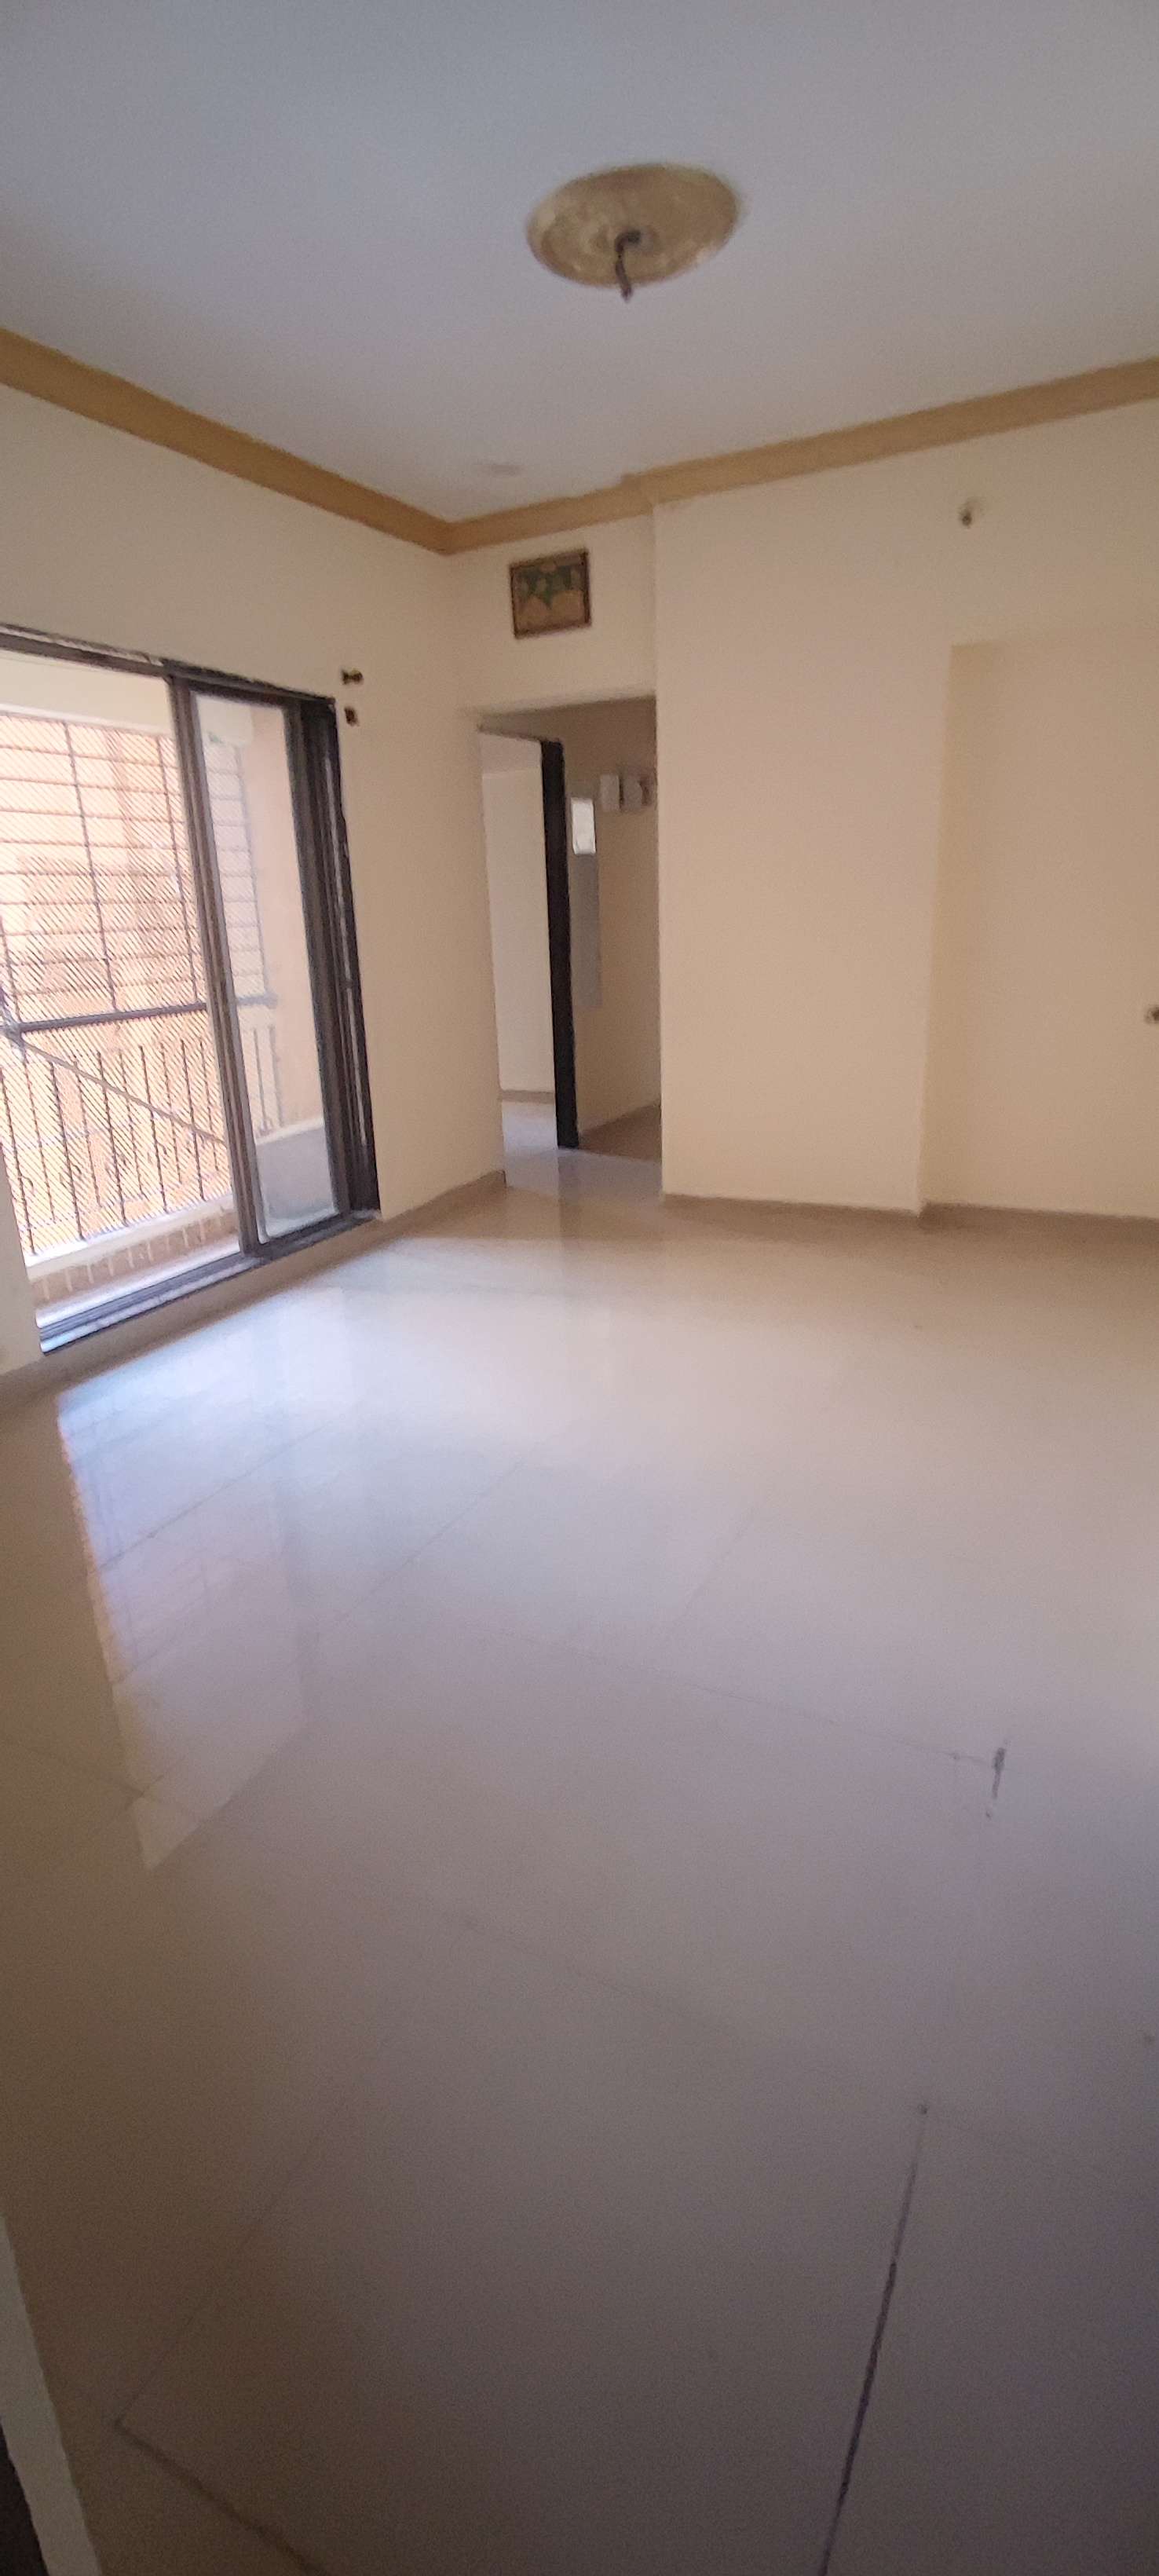 1.5 BHK Apartment For Rent in Hubtown Gardenia Mira Road Mumbai 6680167